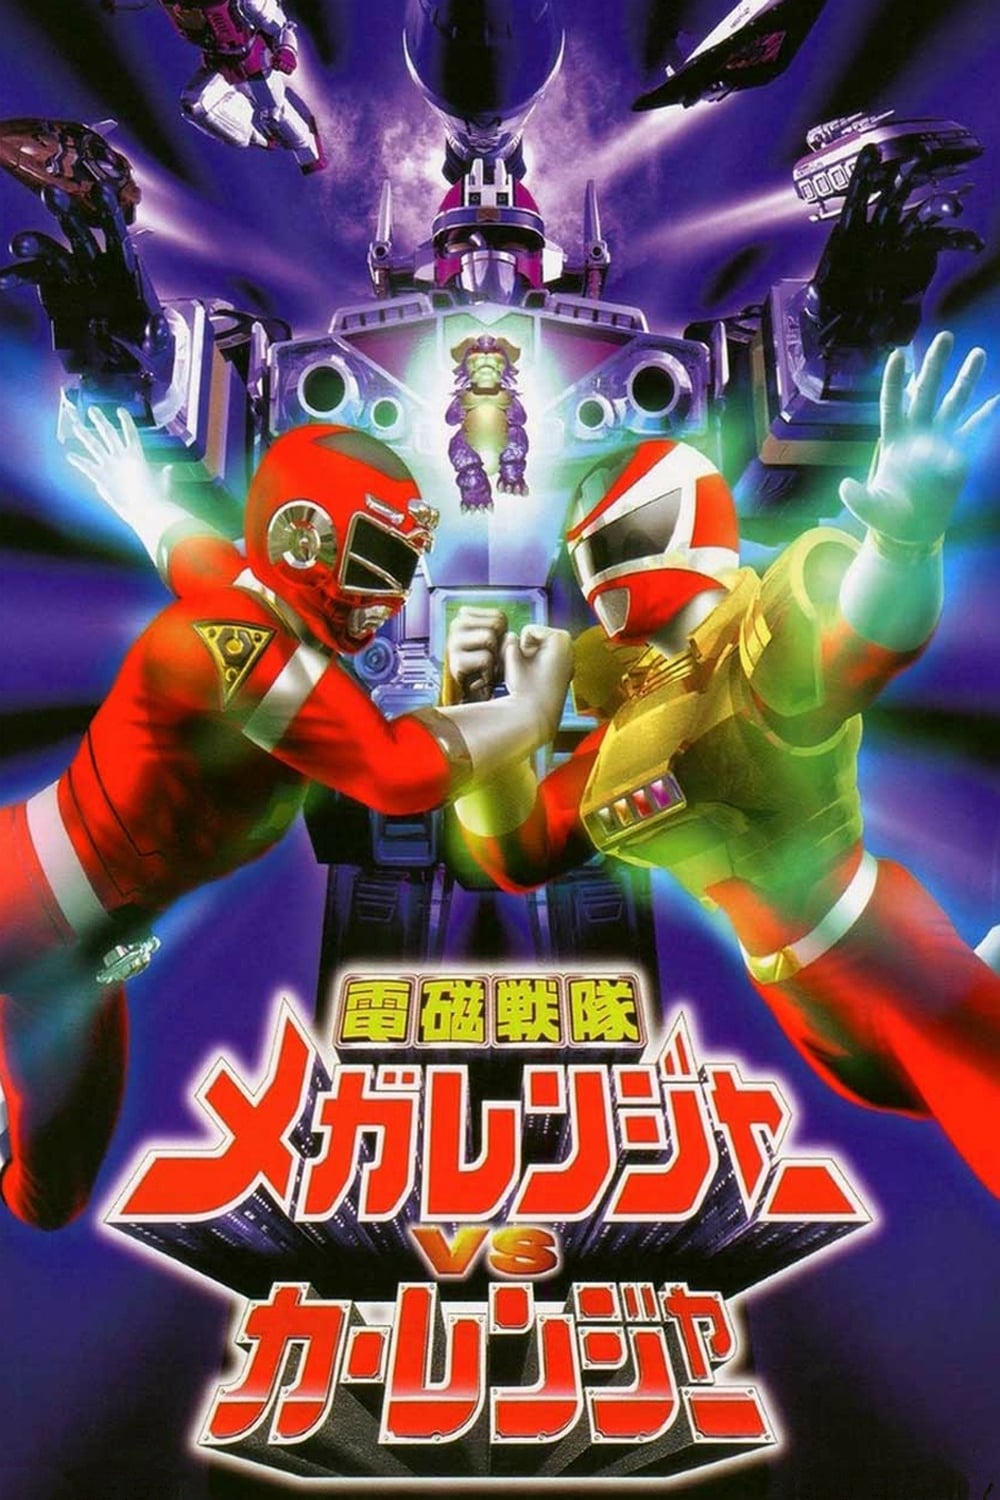 Denji Sentai Megaranger vs Carranger (1998)